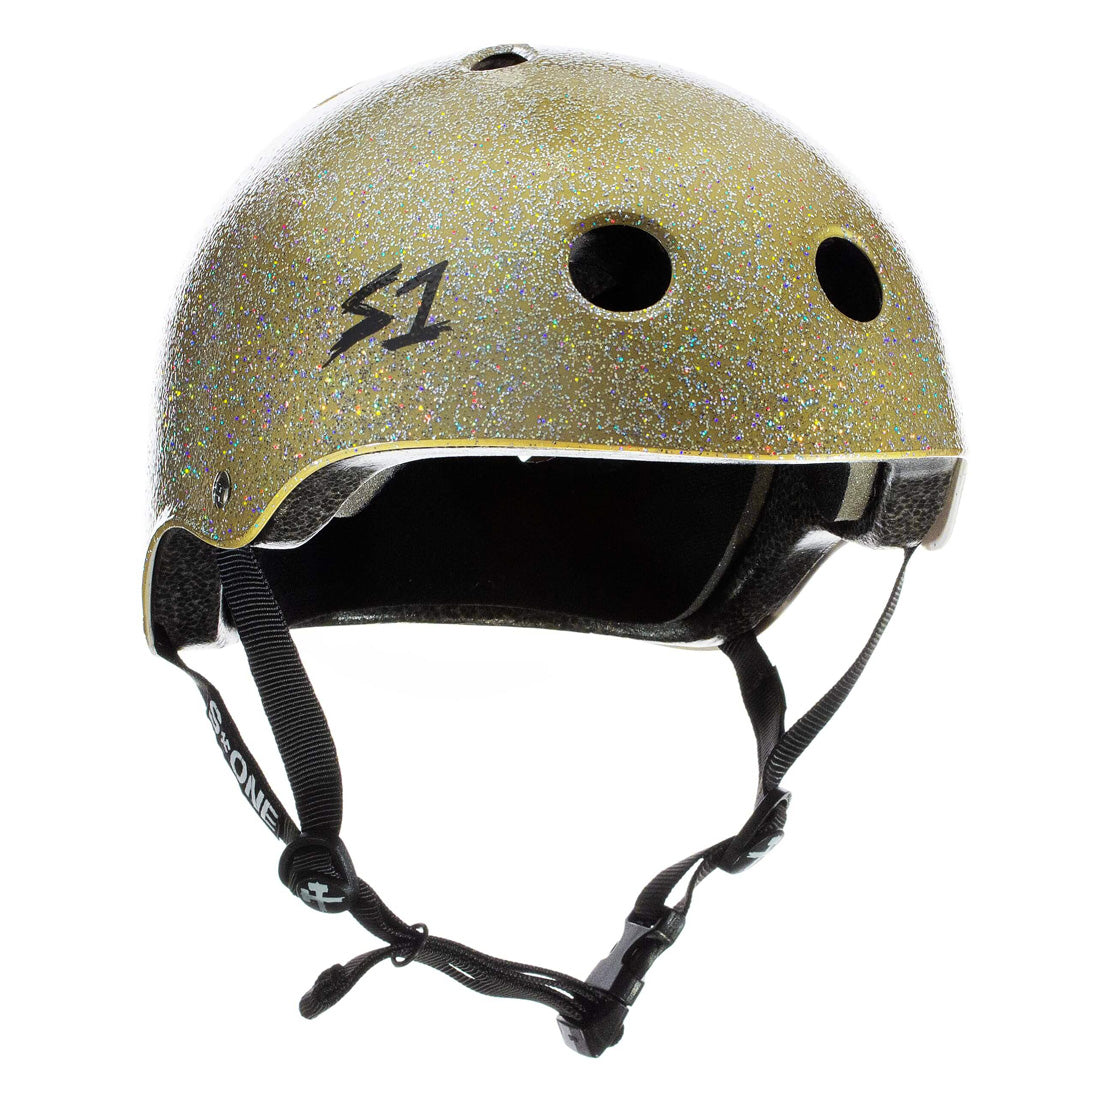 S-One Lifer Helmet - Gold Glitter Helmets